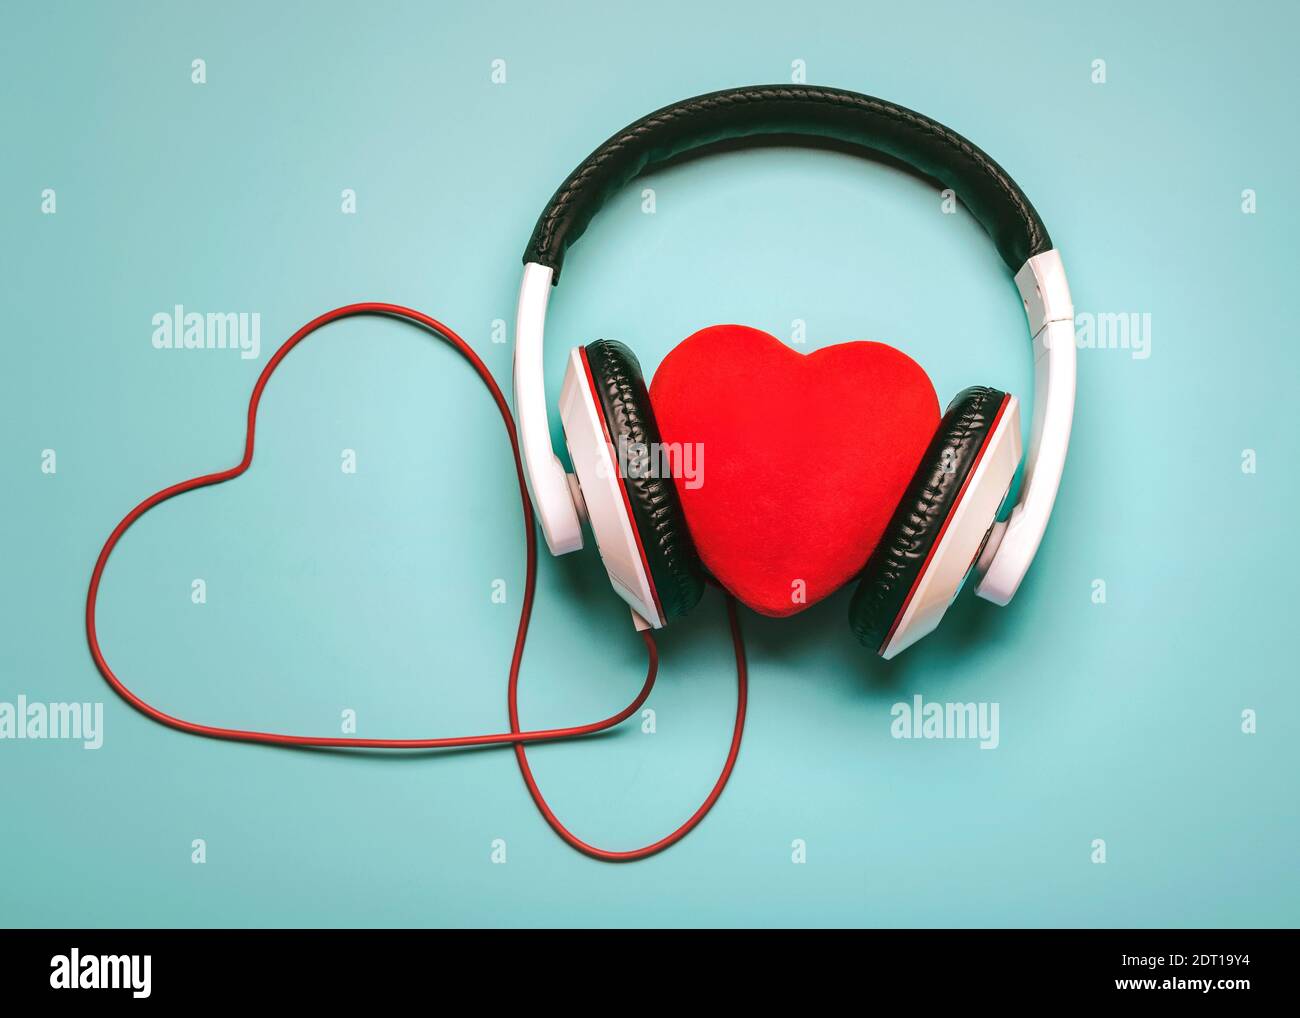 cuore con cuffie e rosso a forma di cuore clable su un blu Background.concetto di musica romantica Foto Stock